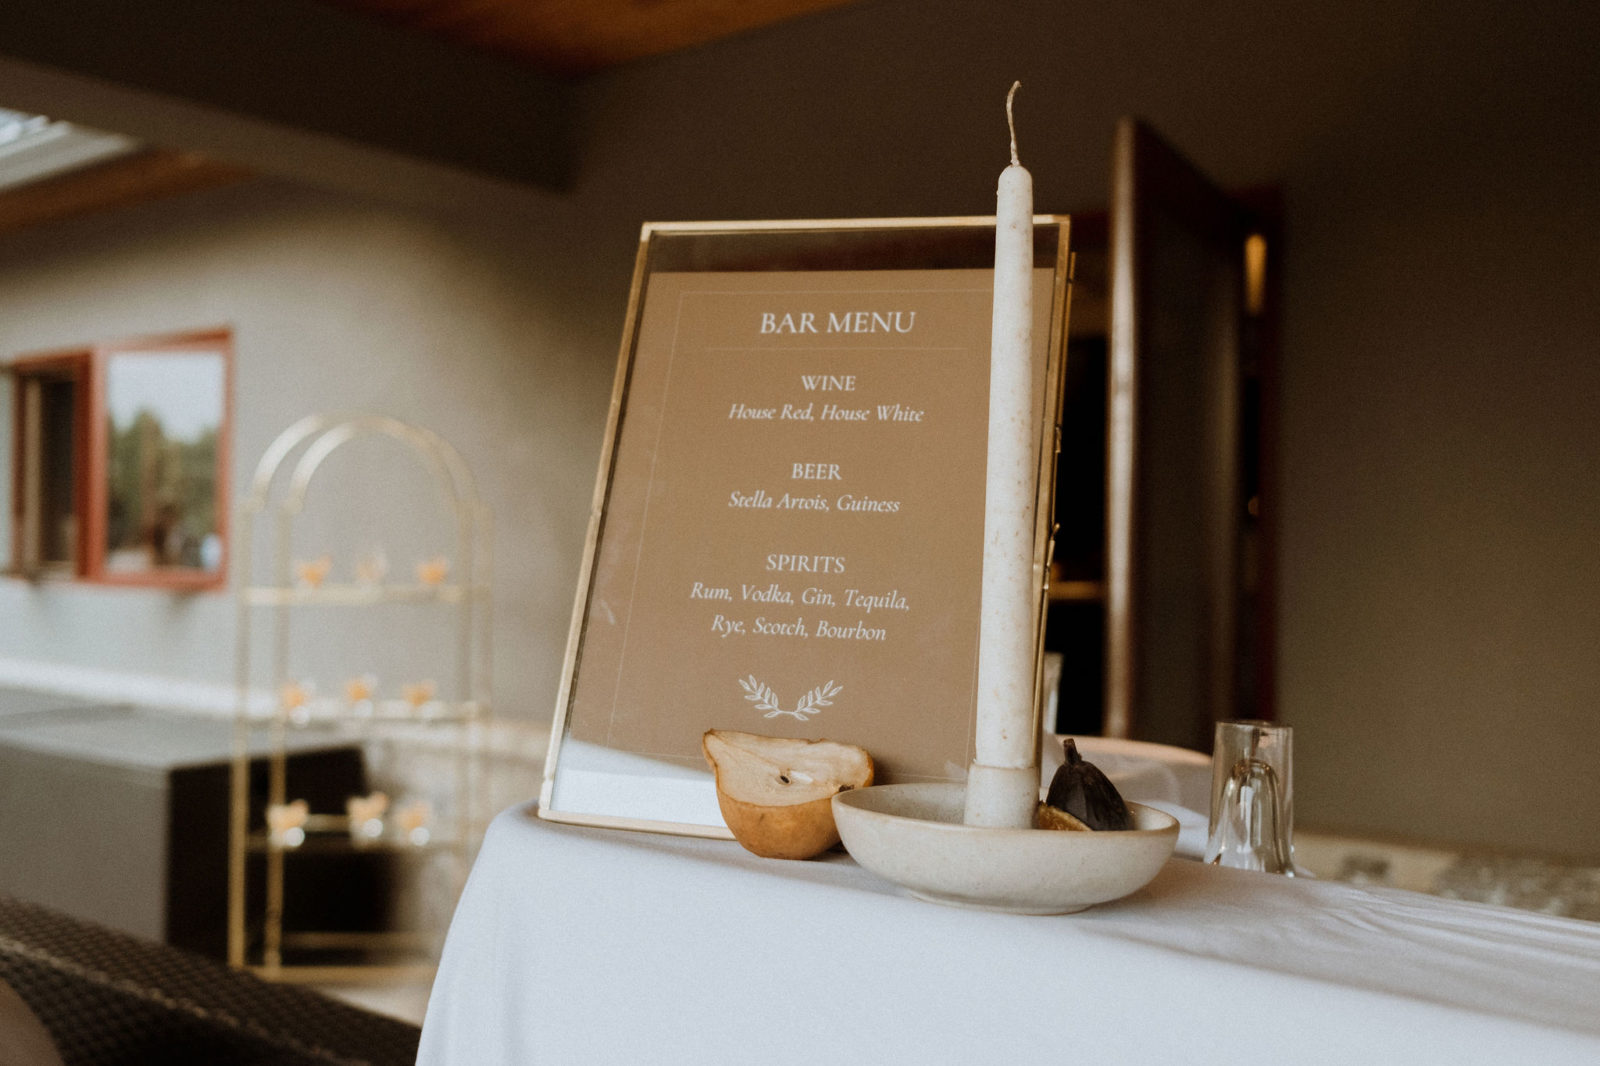 Customized bar menu for wedding, Unique wedding ideas